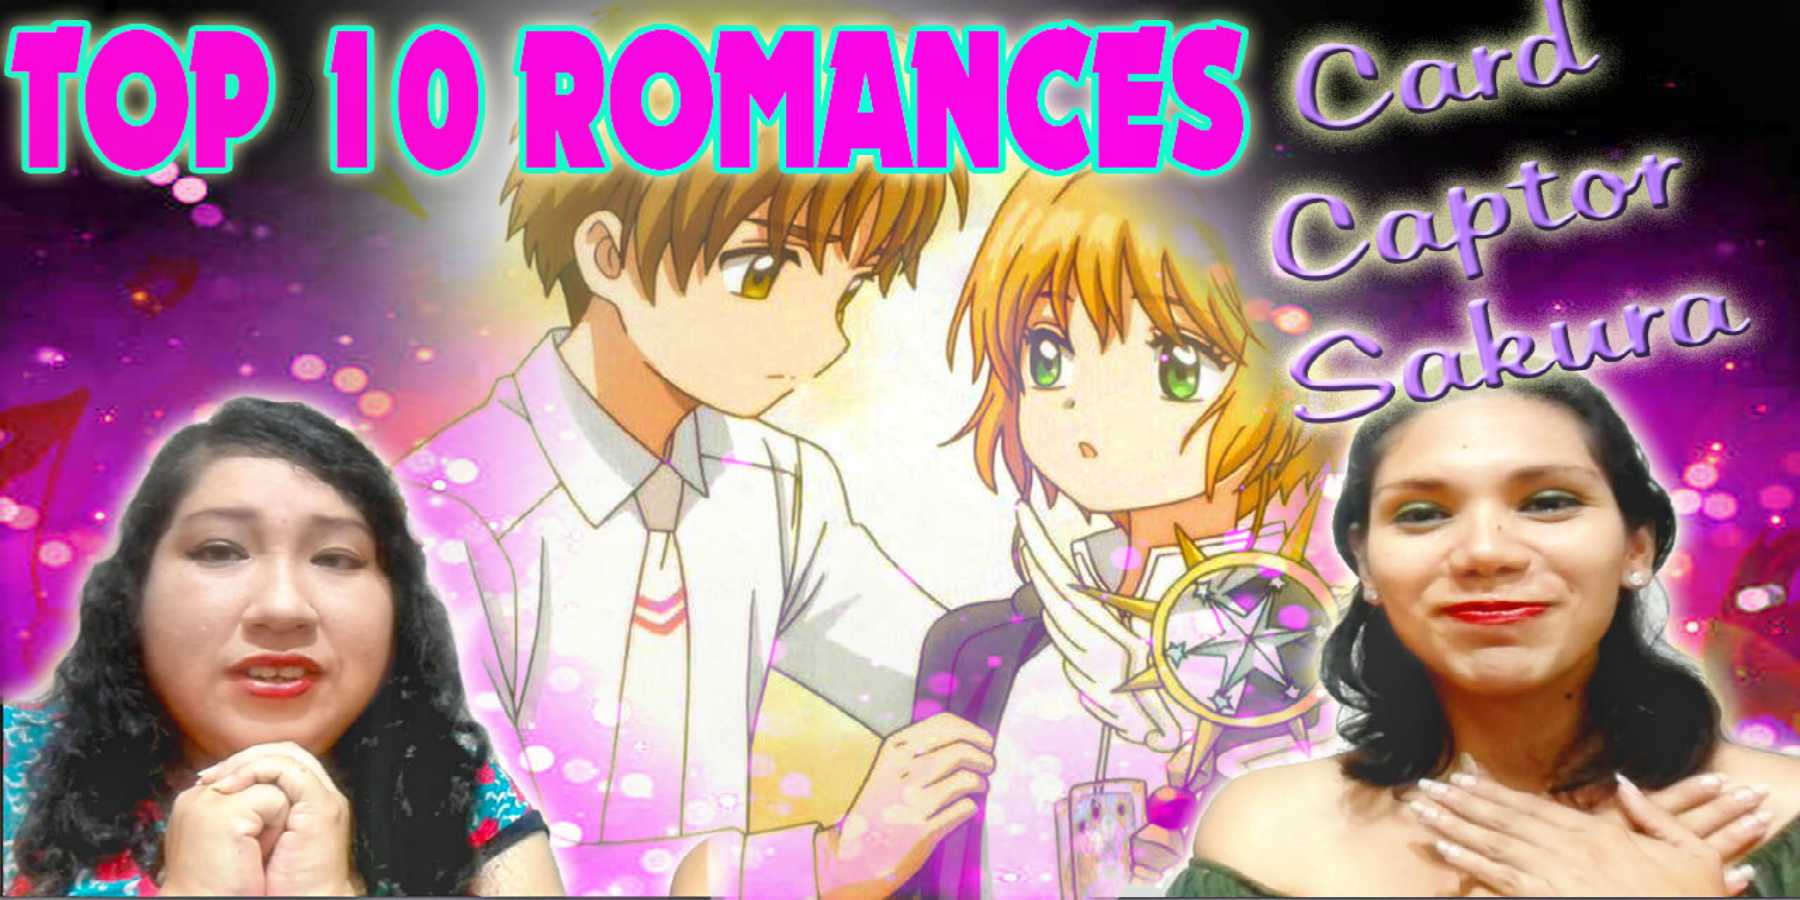 Los Top 10 romances en Card Captor Sakura